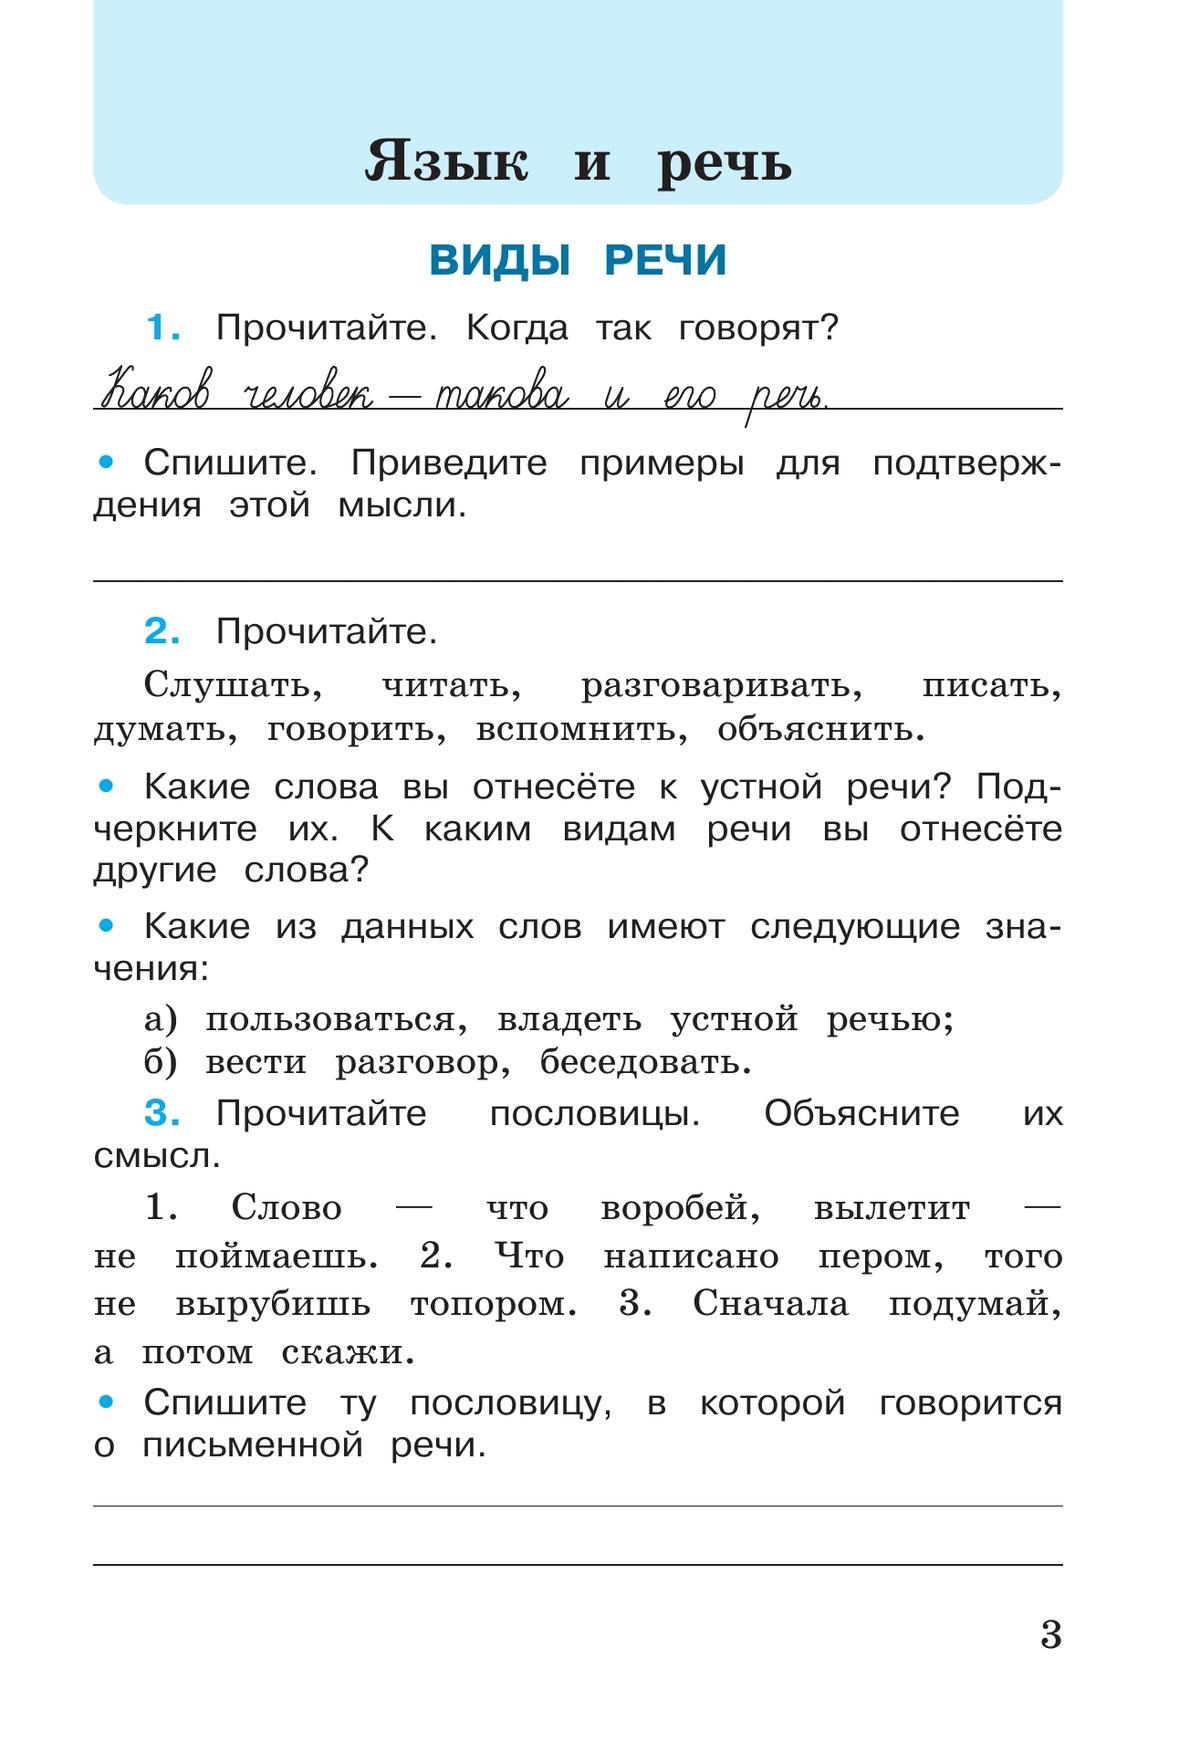 Русский язык. Рабочая тетрадь. 3 класс. В 2 частях. Часть 1 3